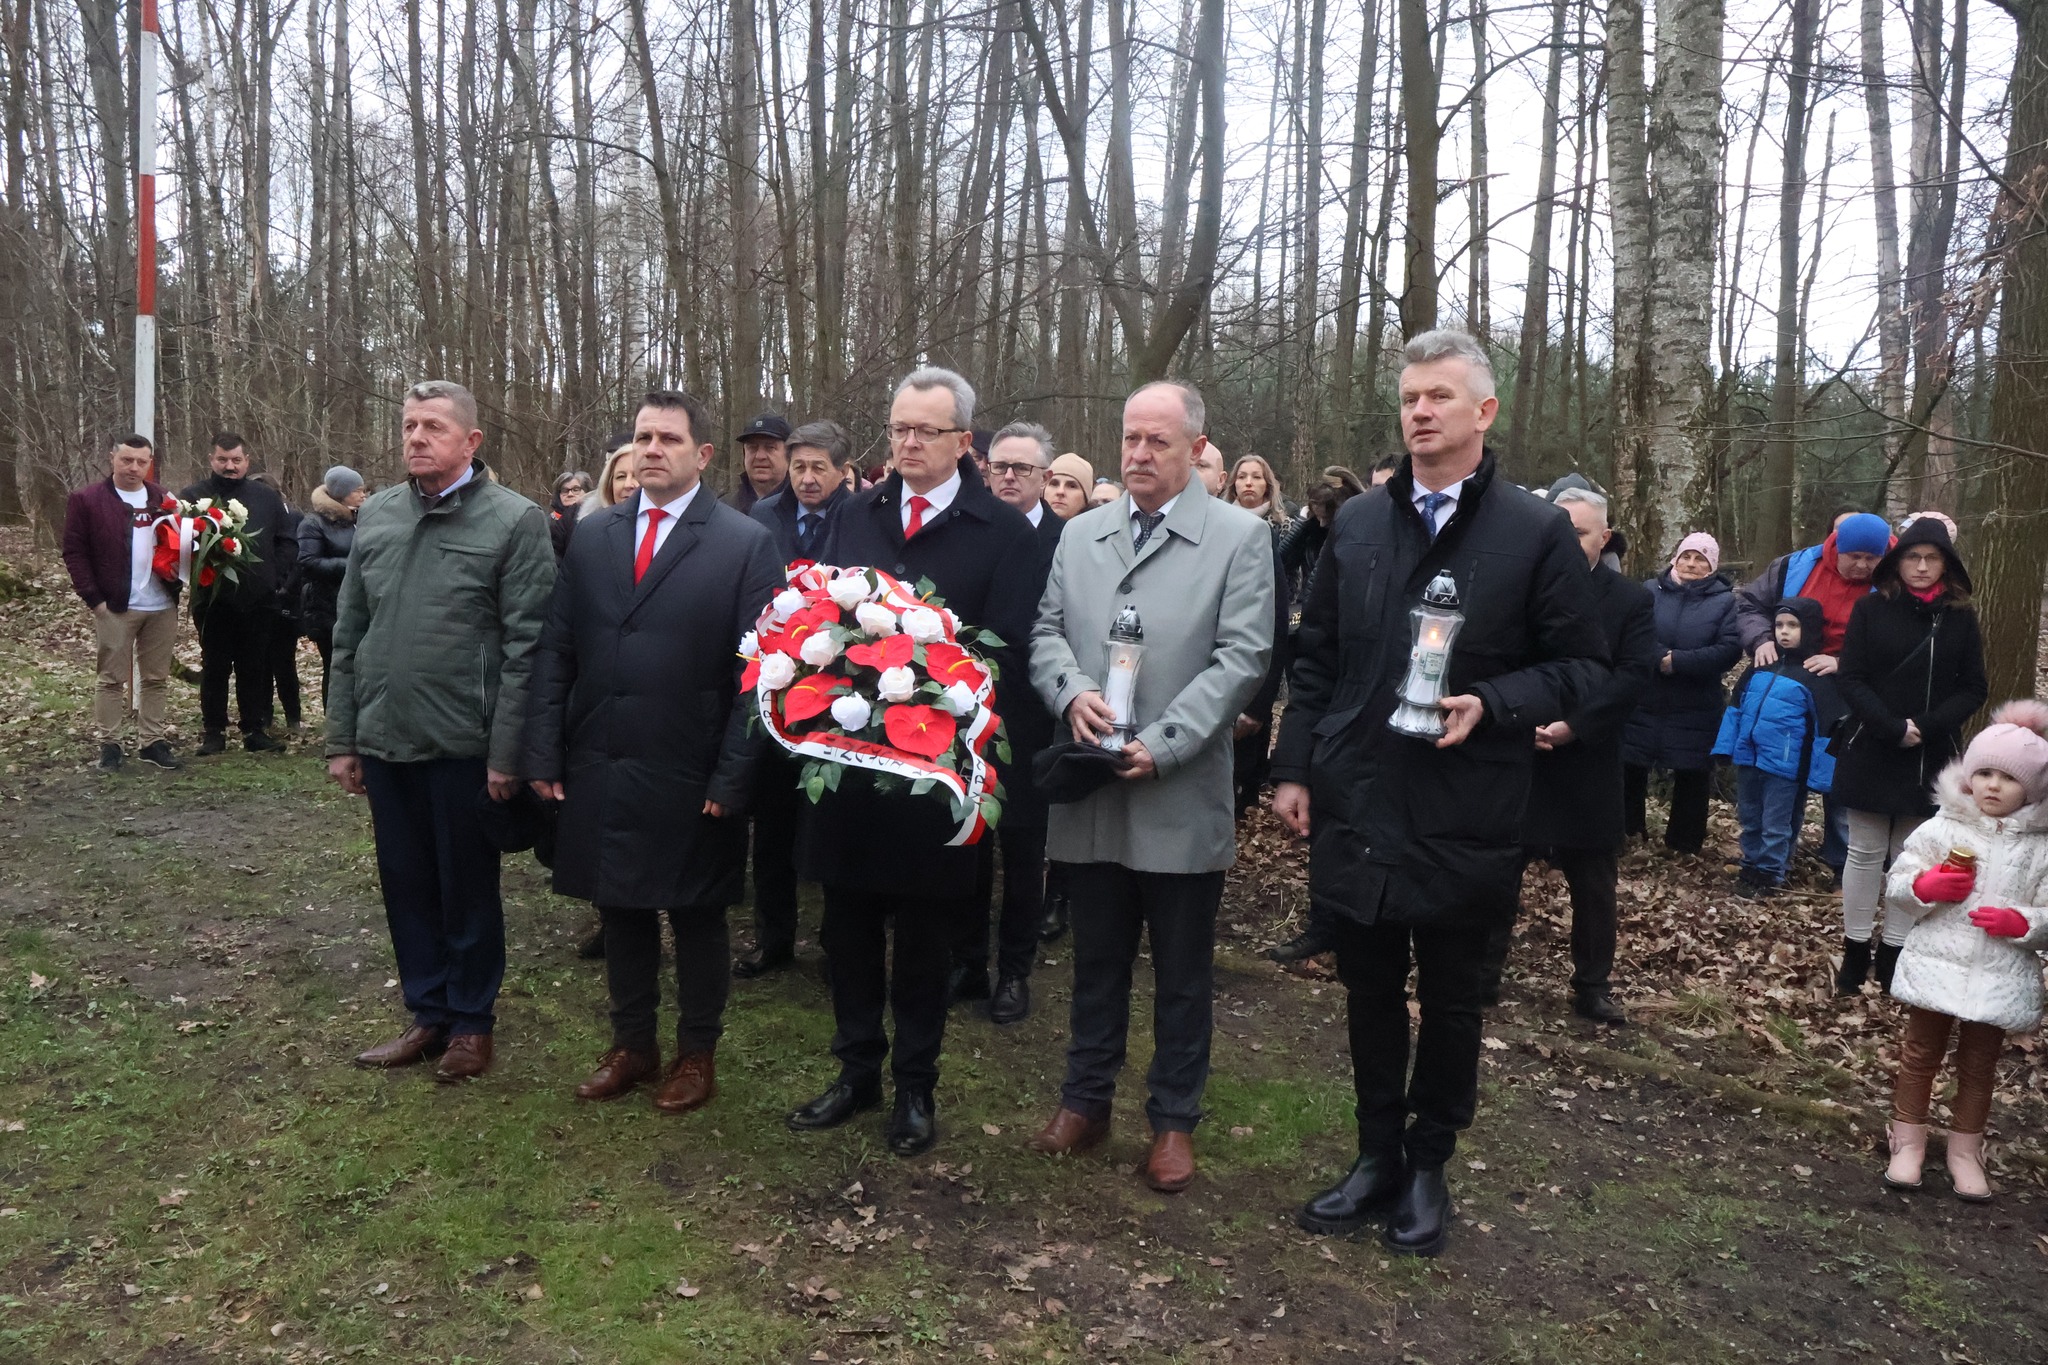 Kwiaty na mogile poległych złożyli przedstawiciele Gminy Zwoleń na czele z Burmistrzem Zwolenia Arkadiuszem Sulimą.